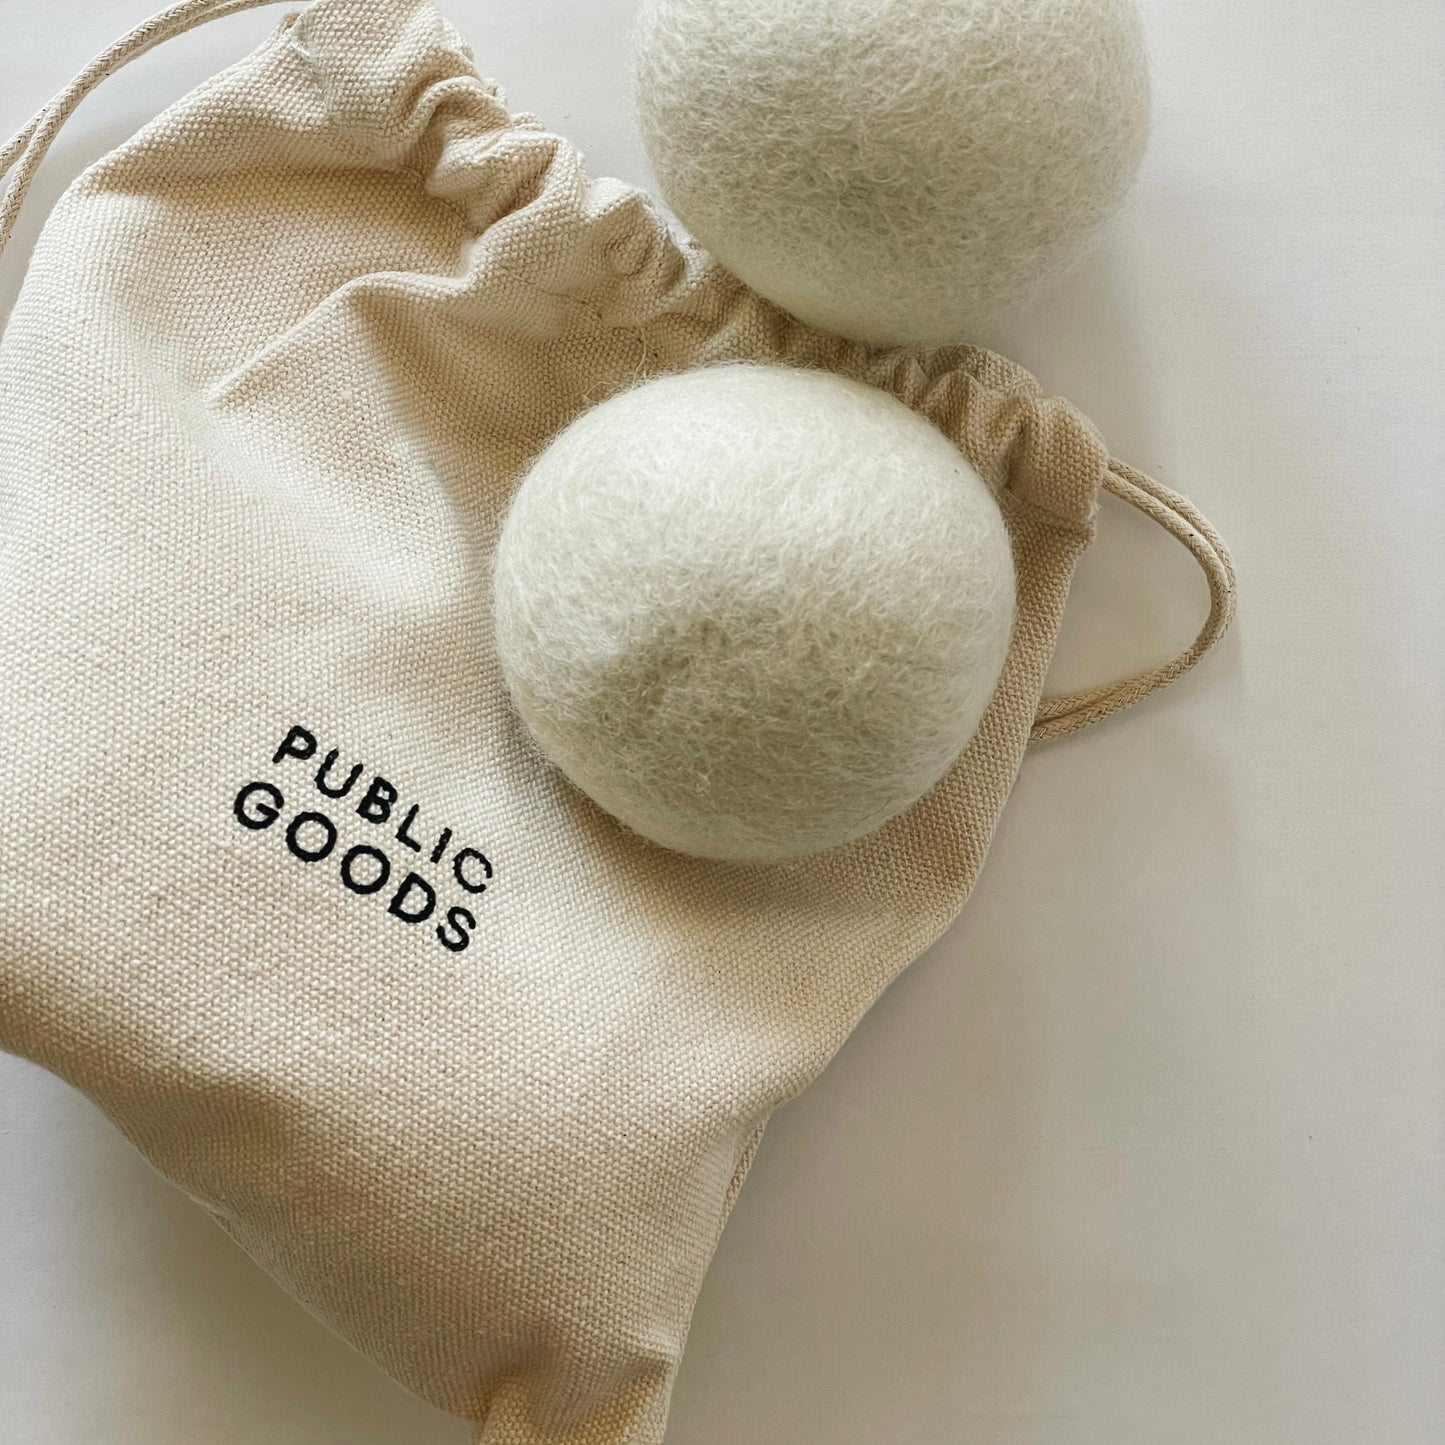 Public Goods Eco Wool Dryer Balls | Set of 4